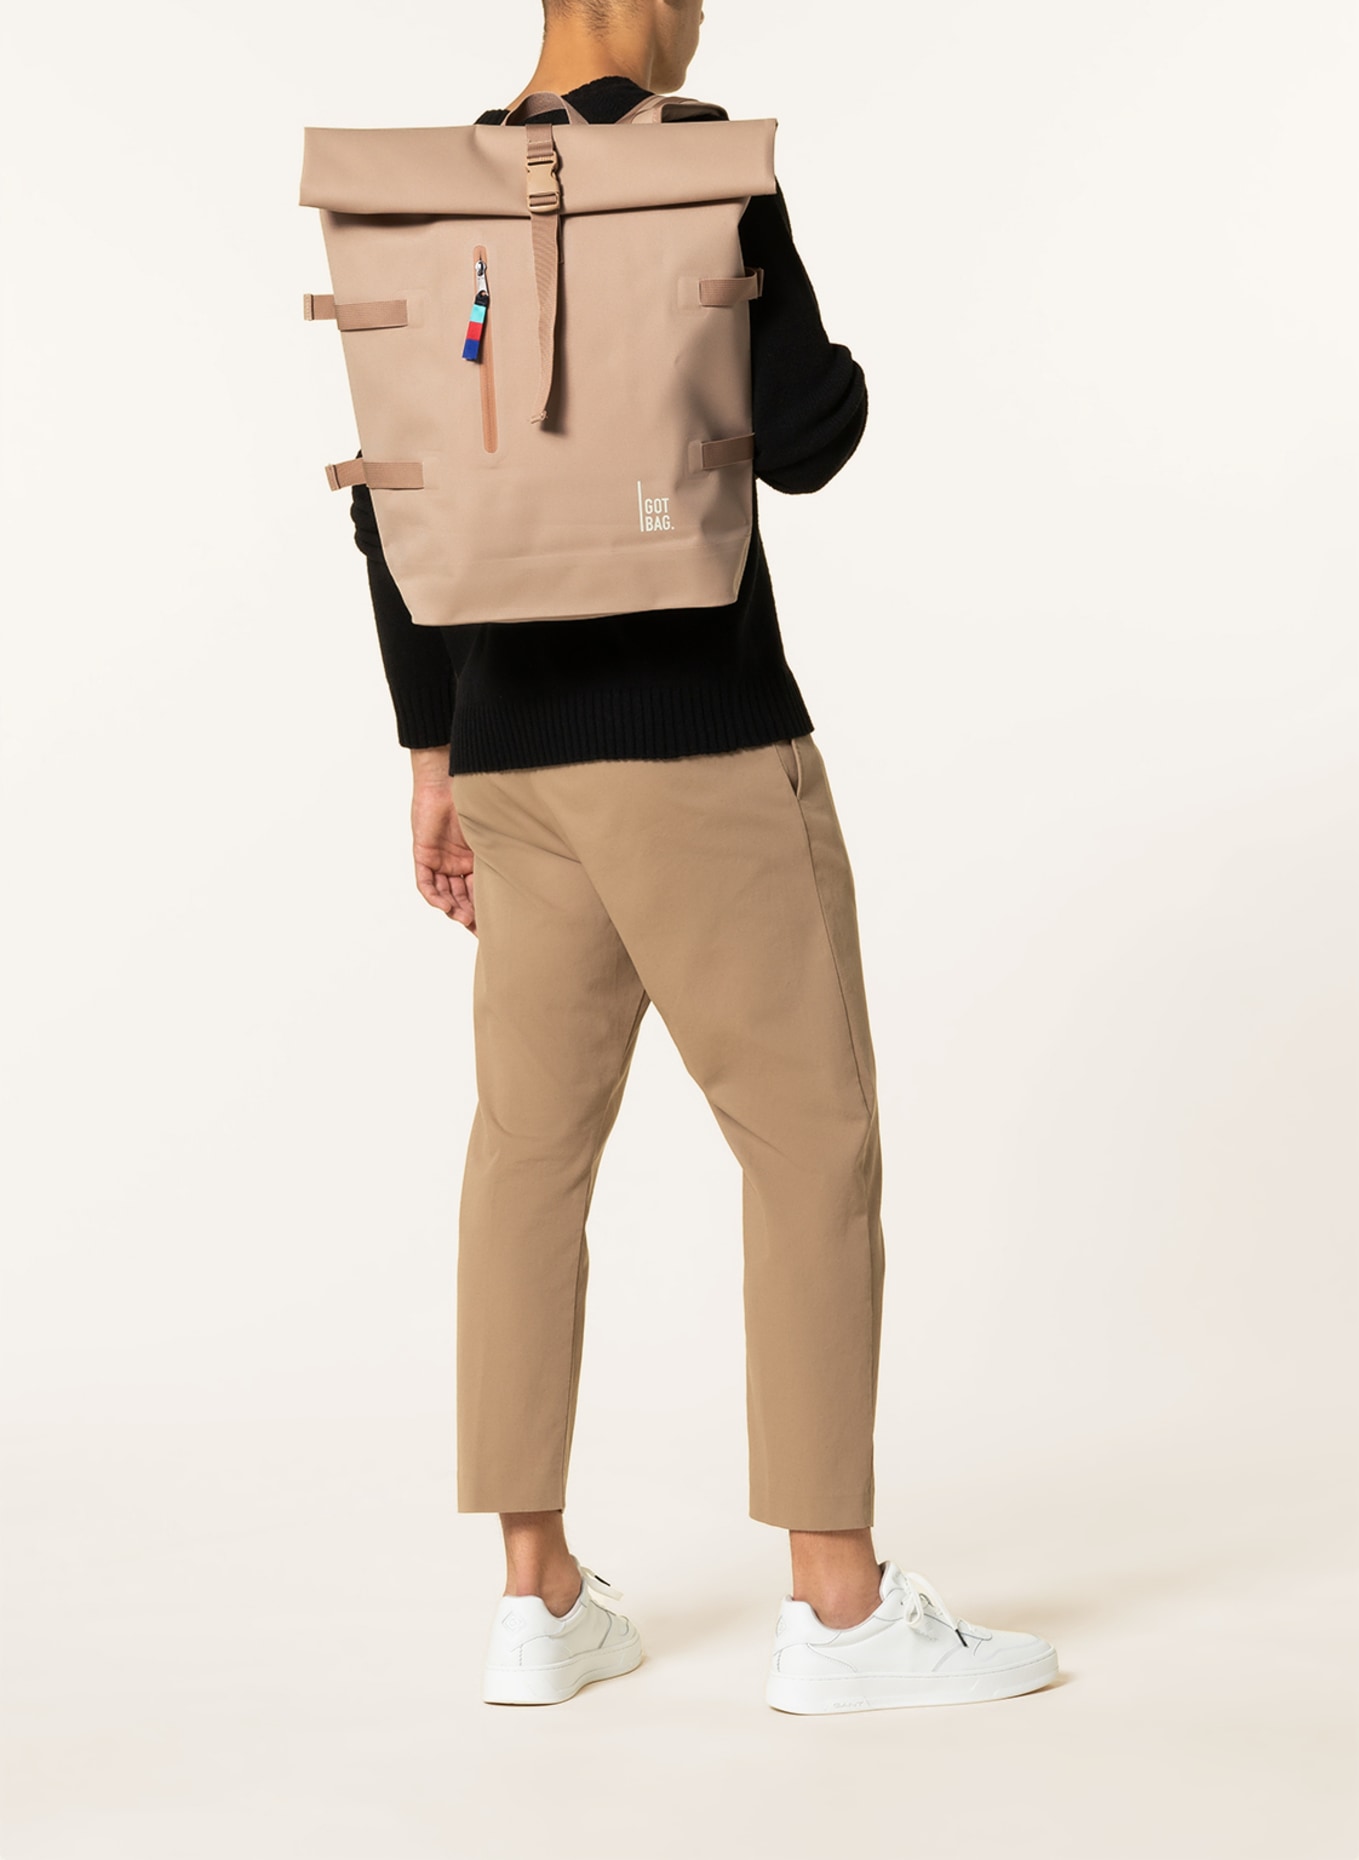 GOT BAG Backpack ROLLTOP, Color: BEIGE (Image 5)